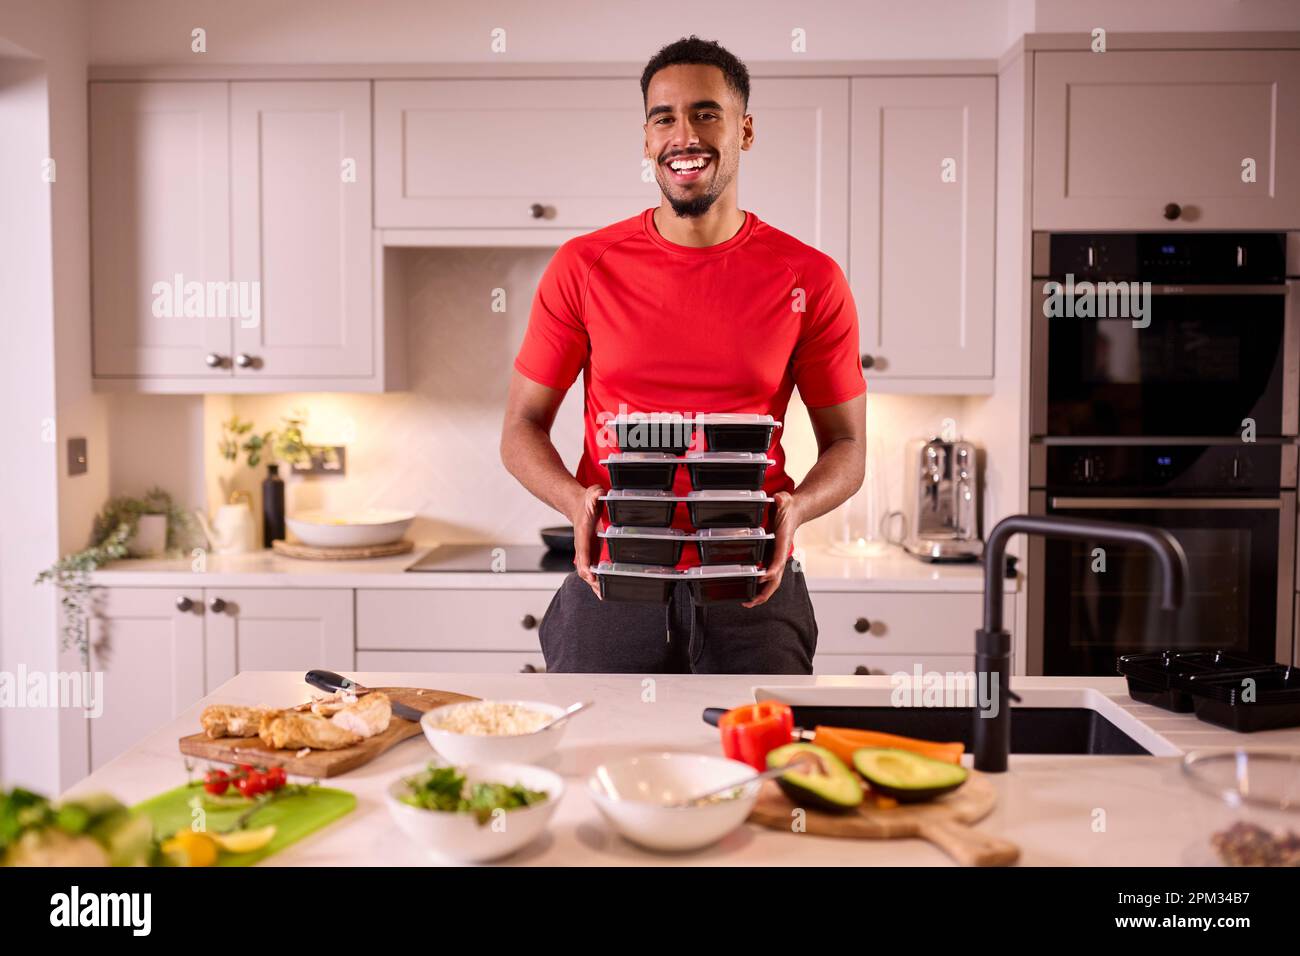 Porträt Des Mannes In Der Küche Mit Fitness-Kleidung, Die Eine Charge Gesunder Mahlzeiten Für Den Gefrierschrank Macht Stockfoto